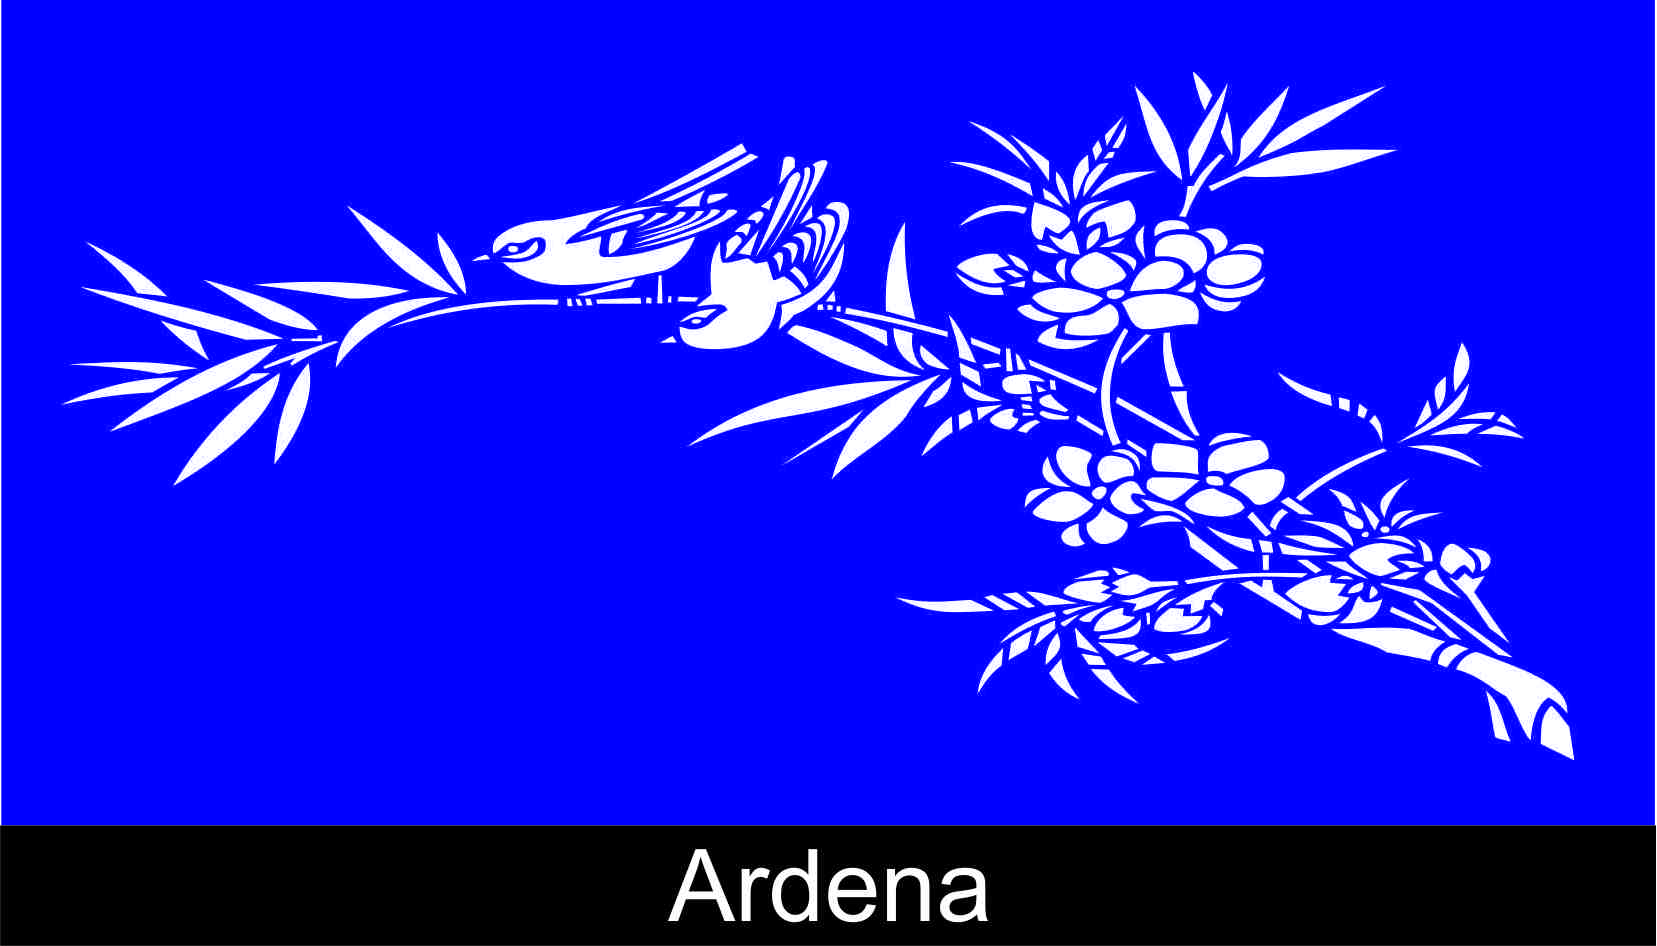 Ardena